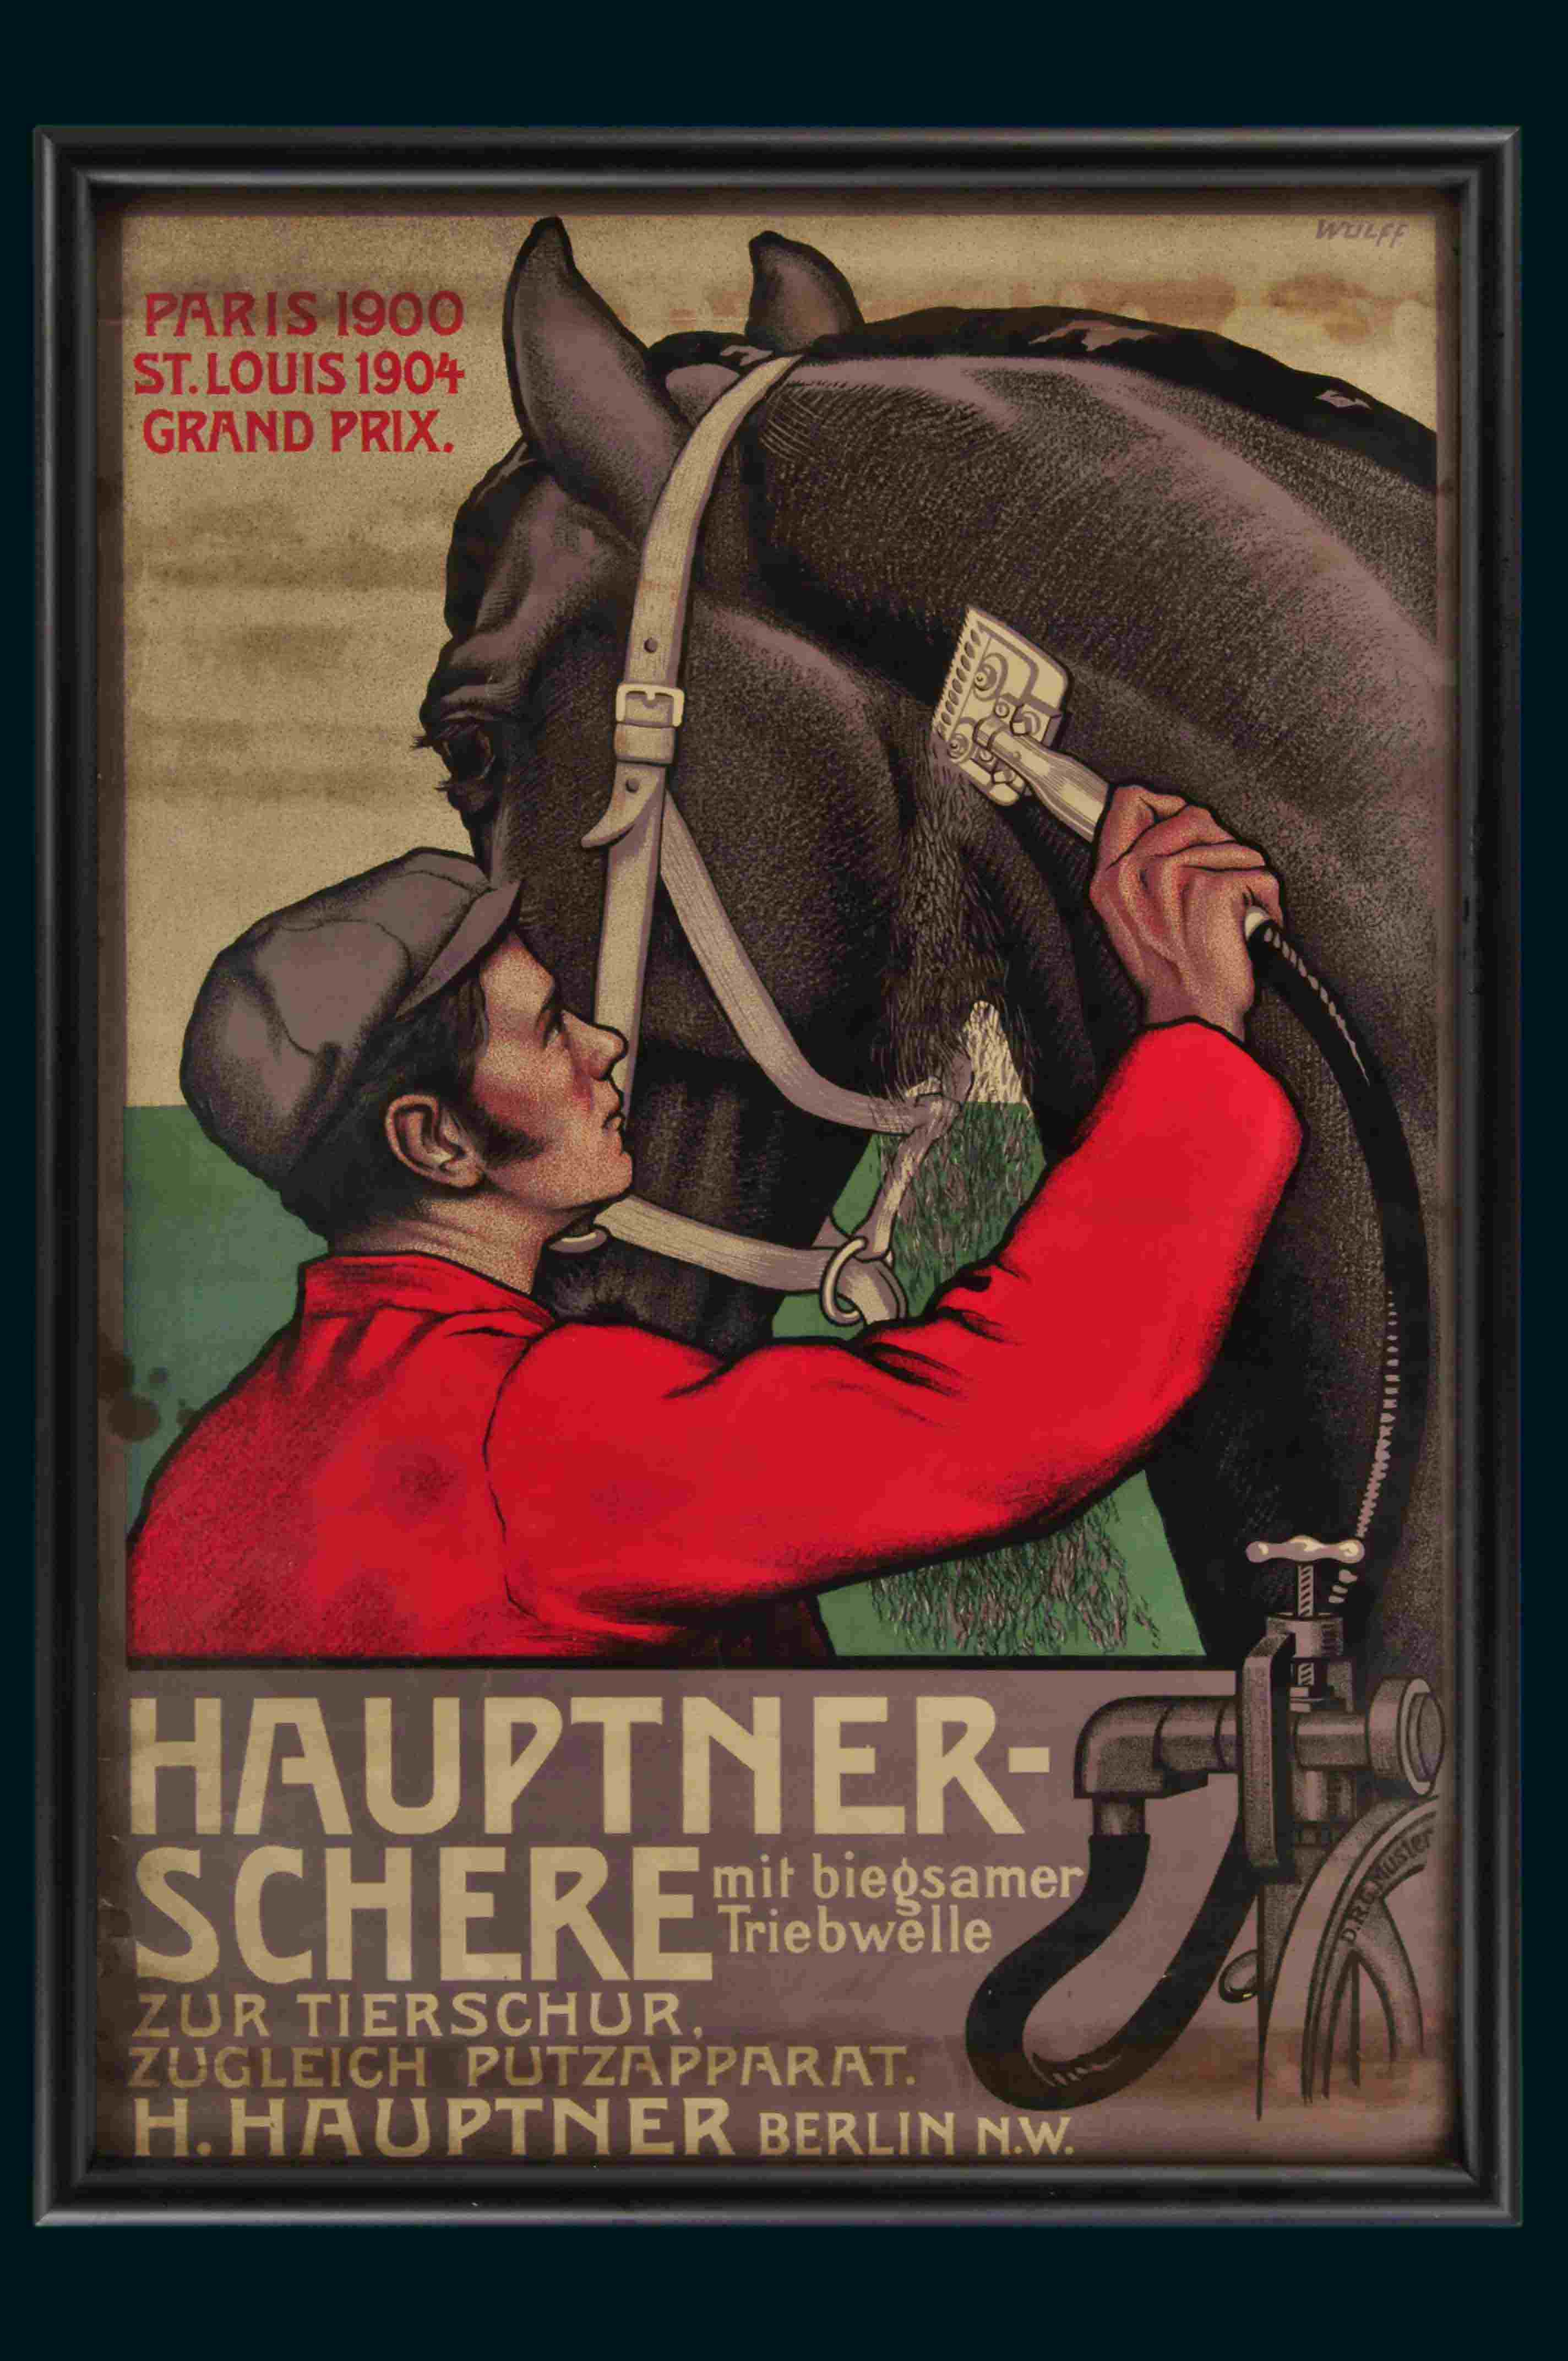 Hauptner-Schere 